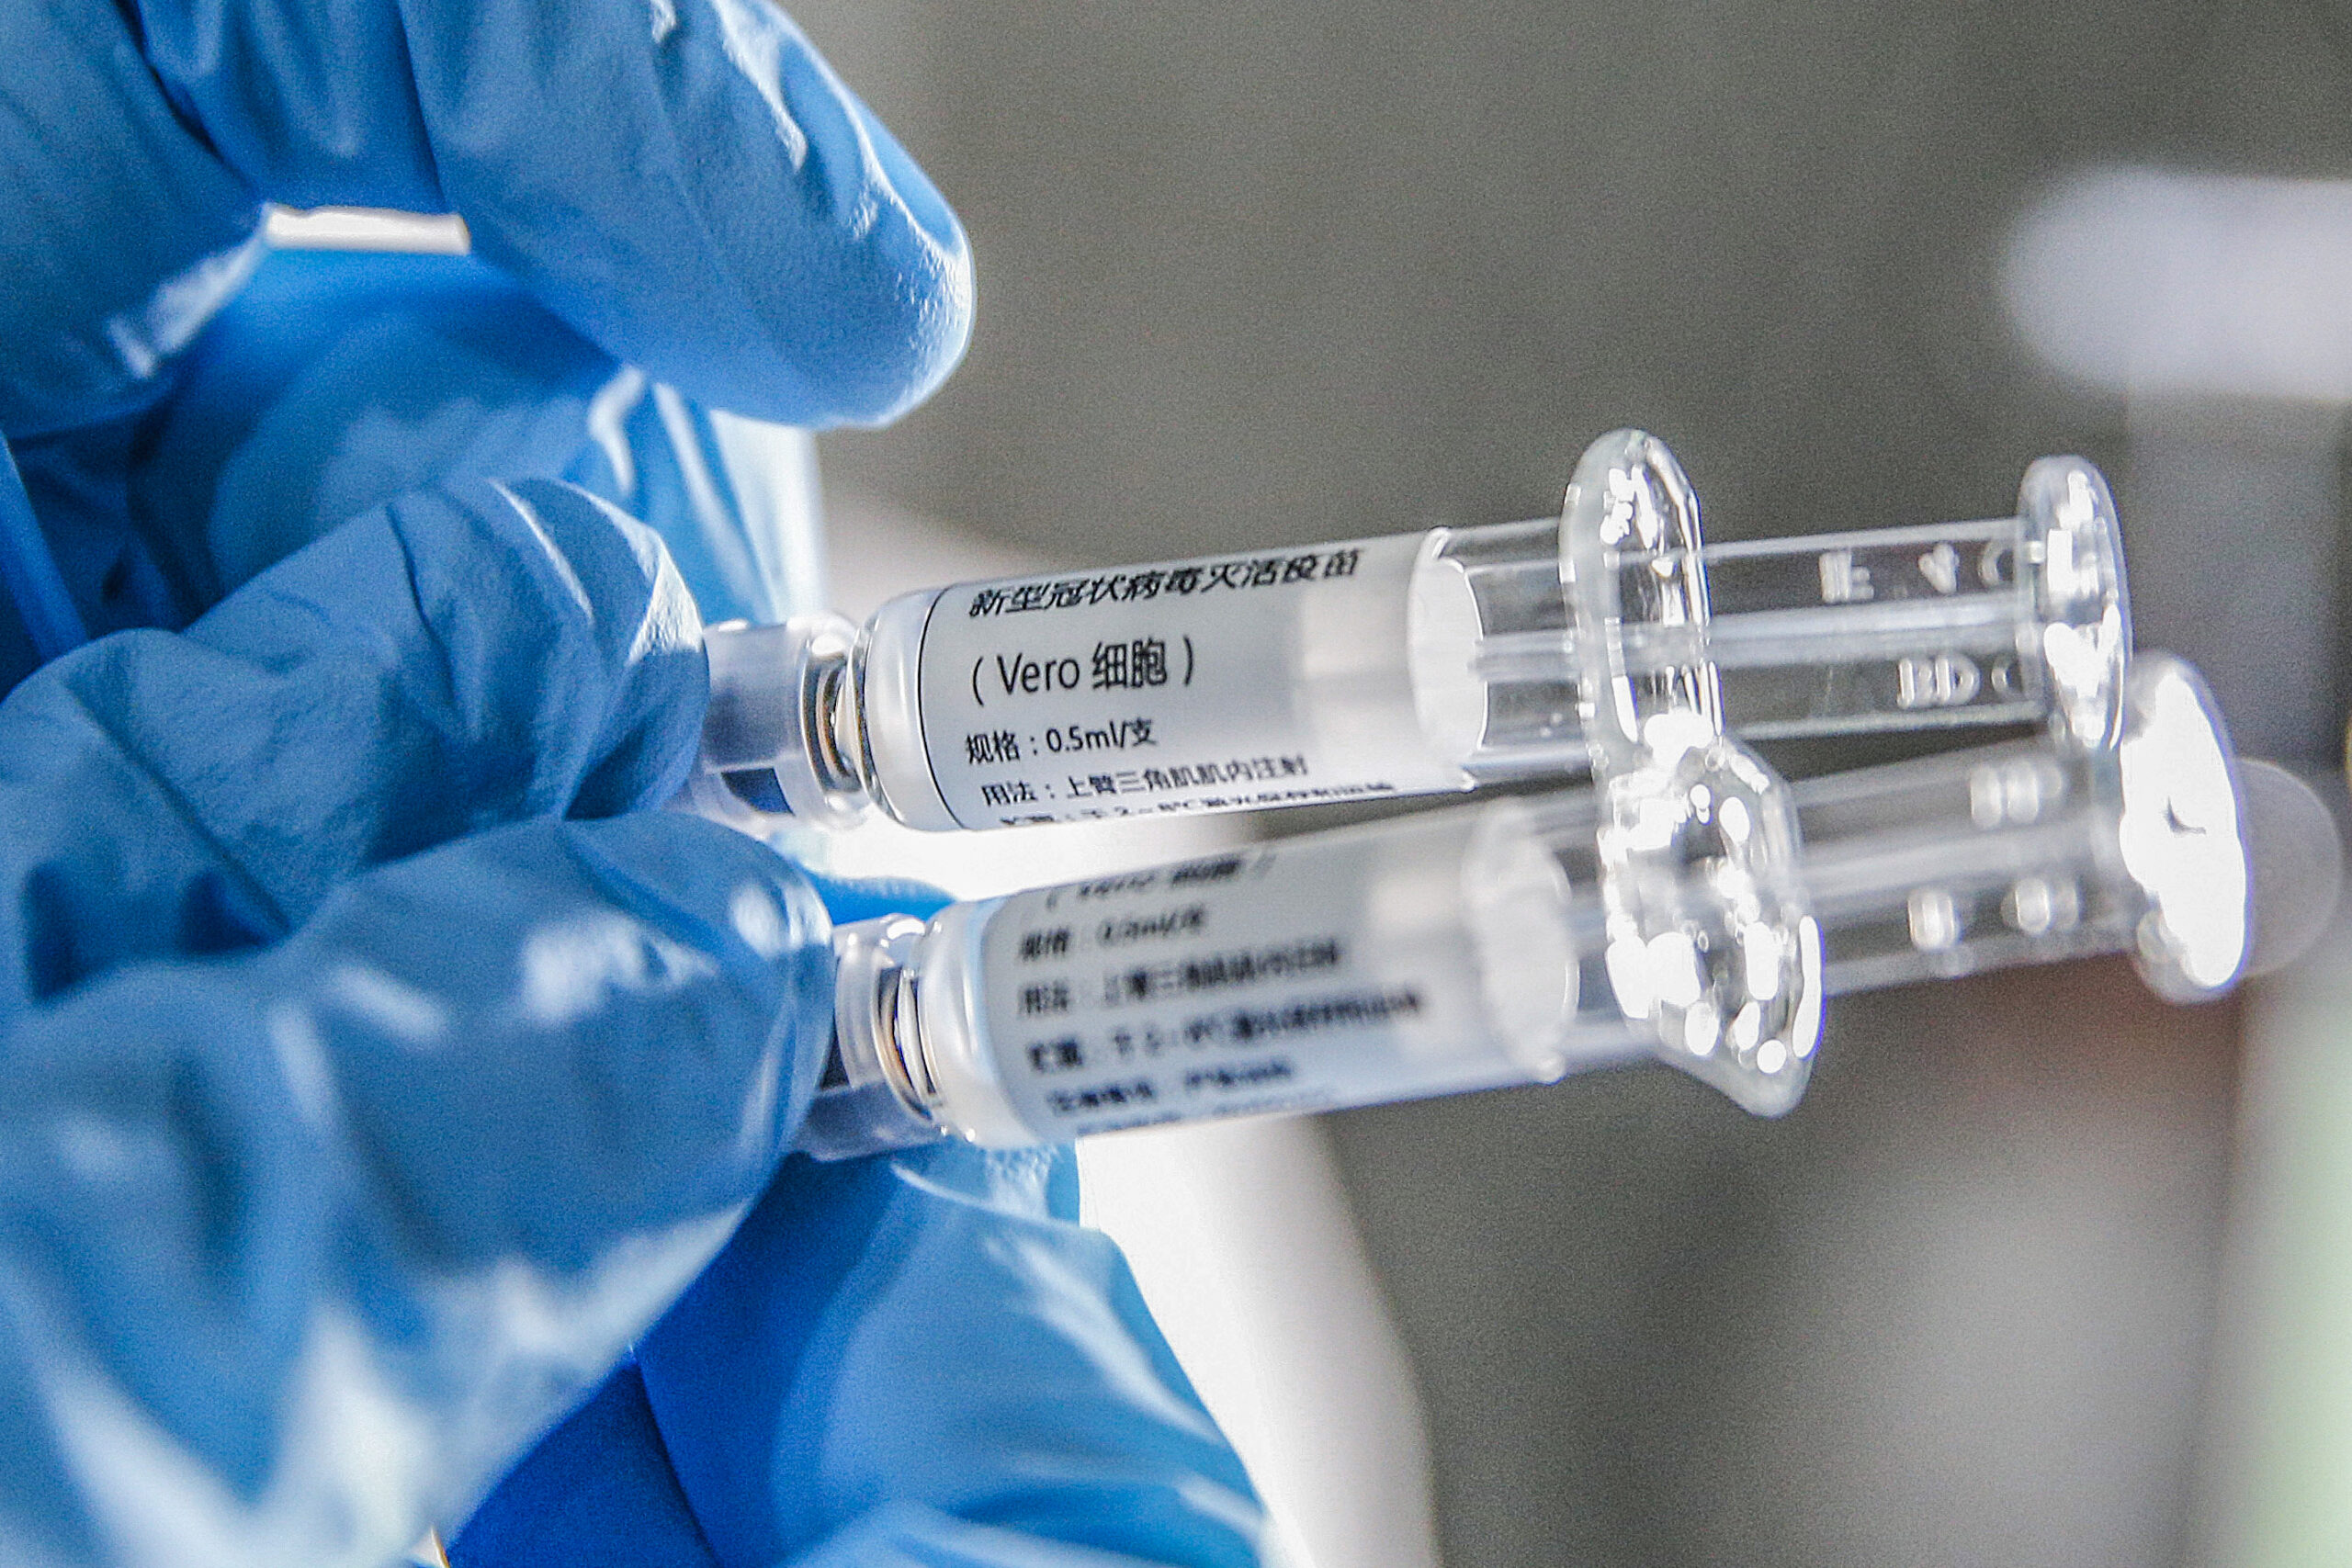 วัคซีนโควิด-19 ฝีมือจีน 'ไม่ก่อผลข้างเคียง' กับอาสาสมัครในรัสเซีย